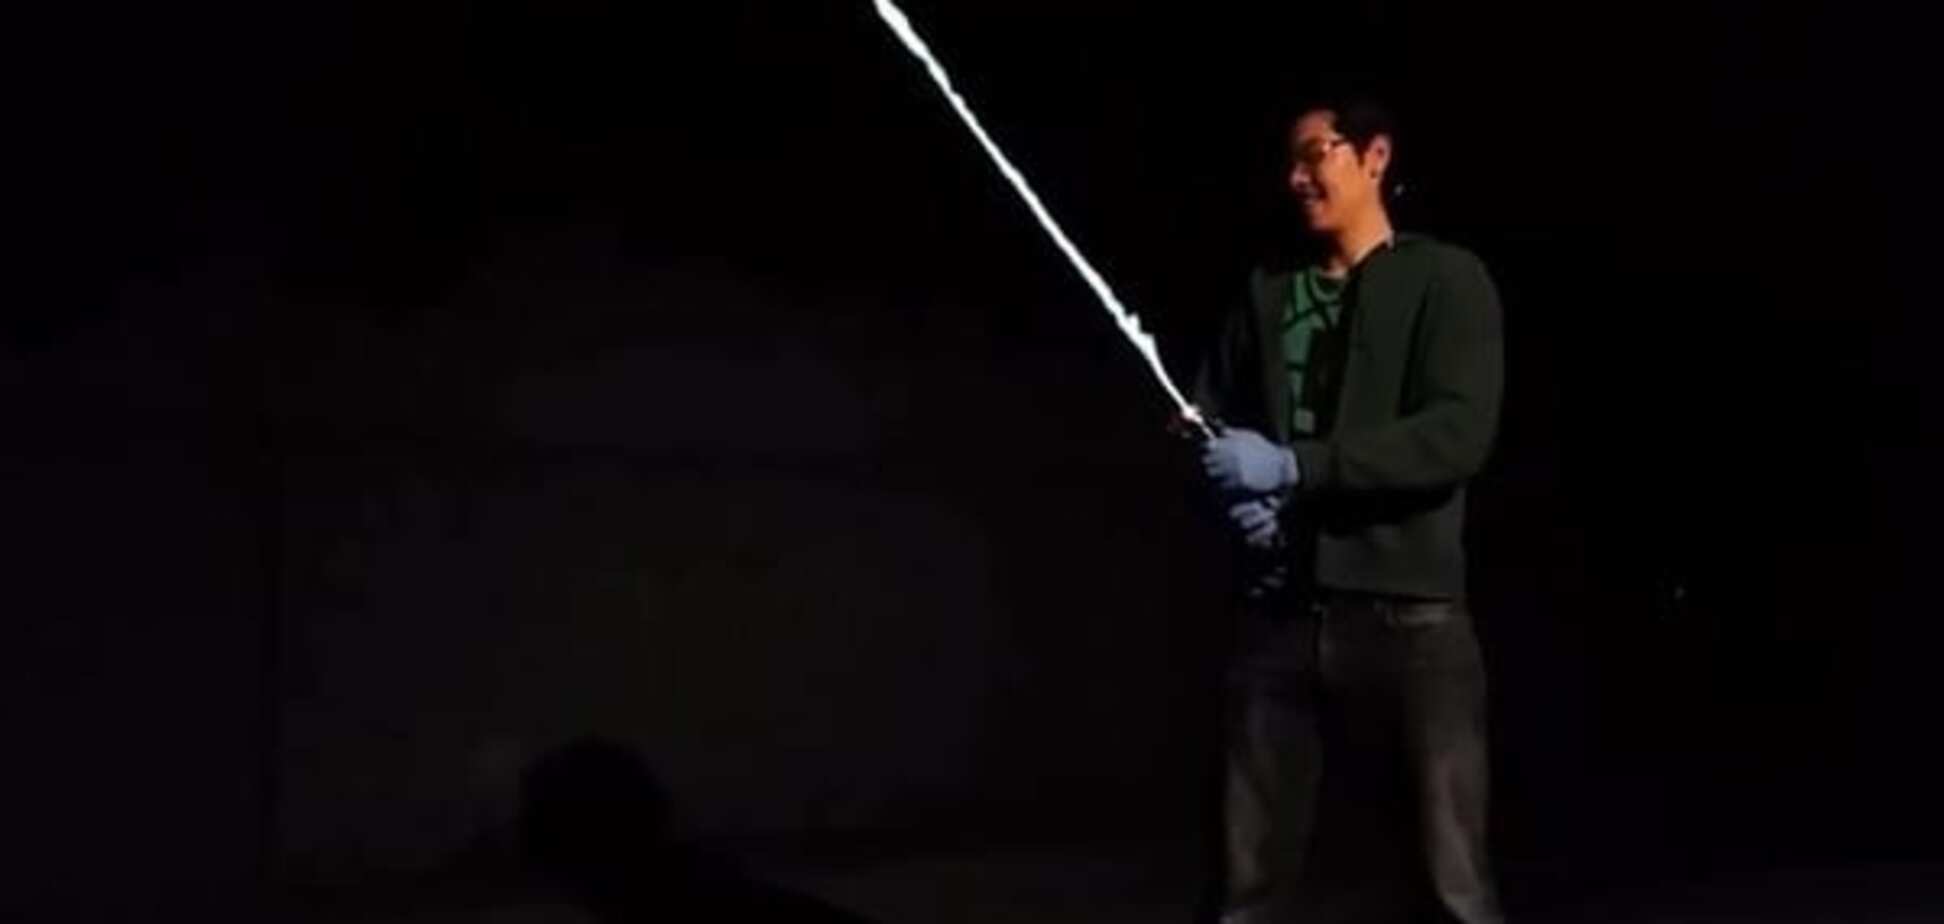 Американский инженер создал световой меч из 'Звездных войн'